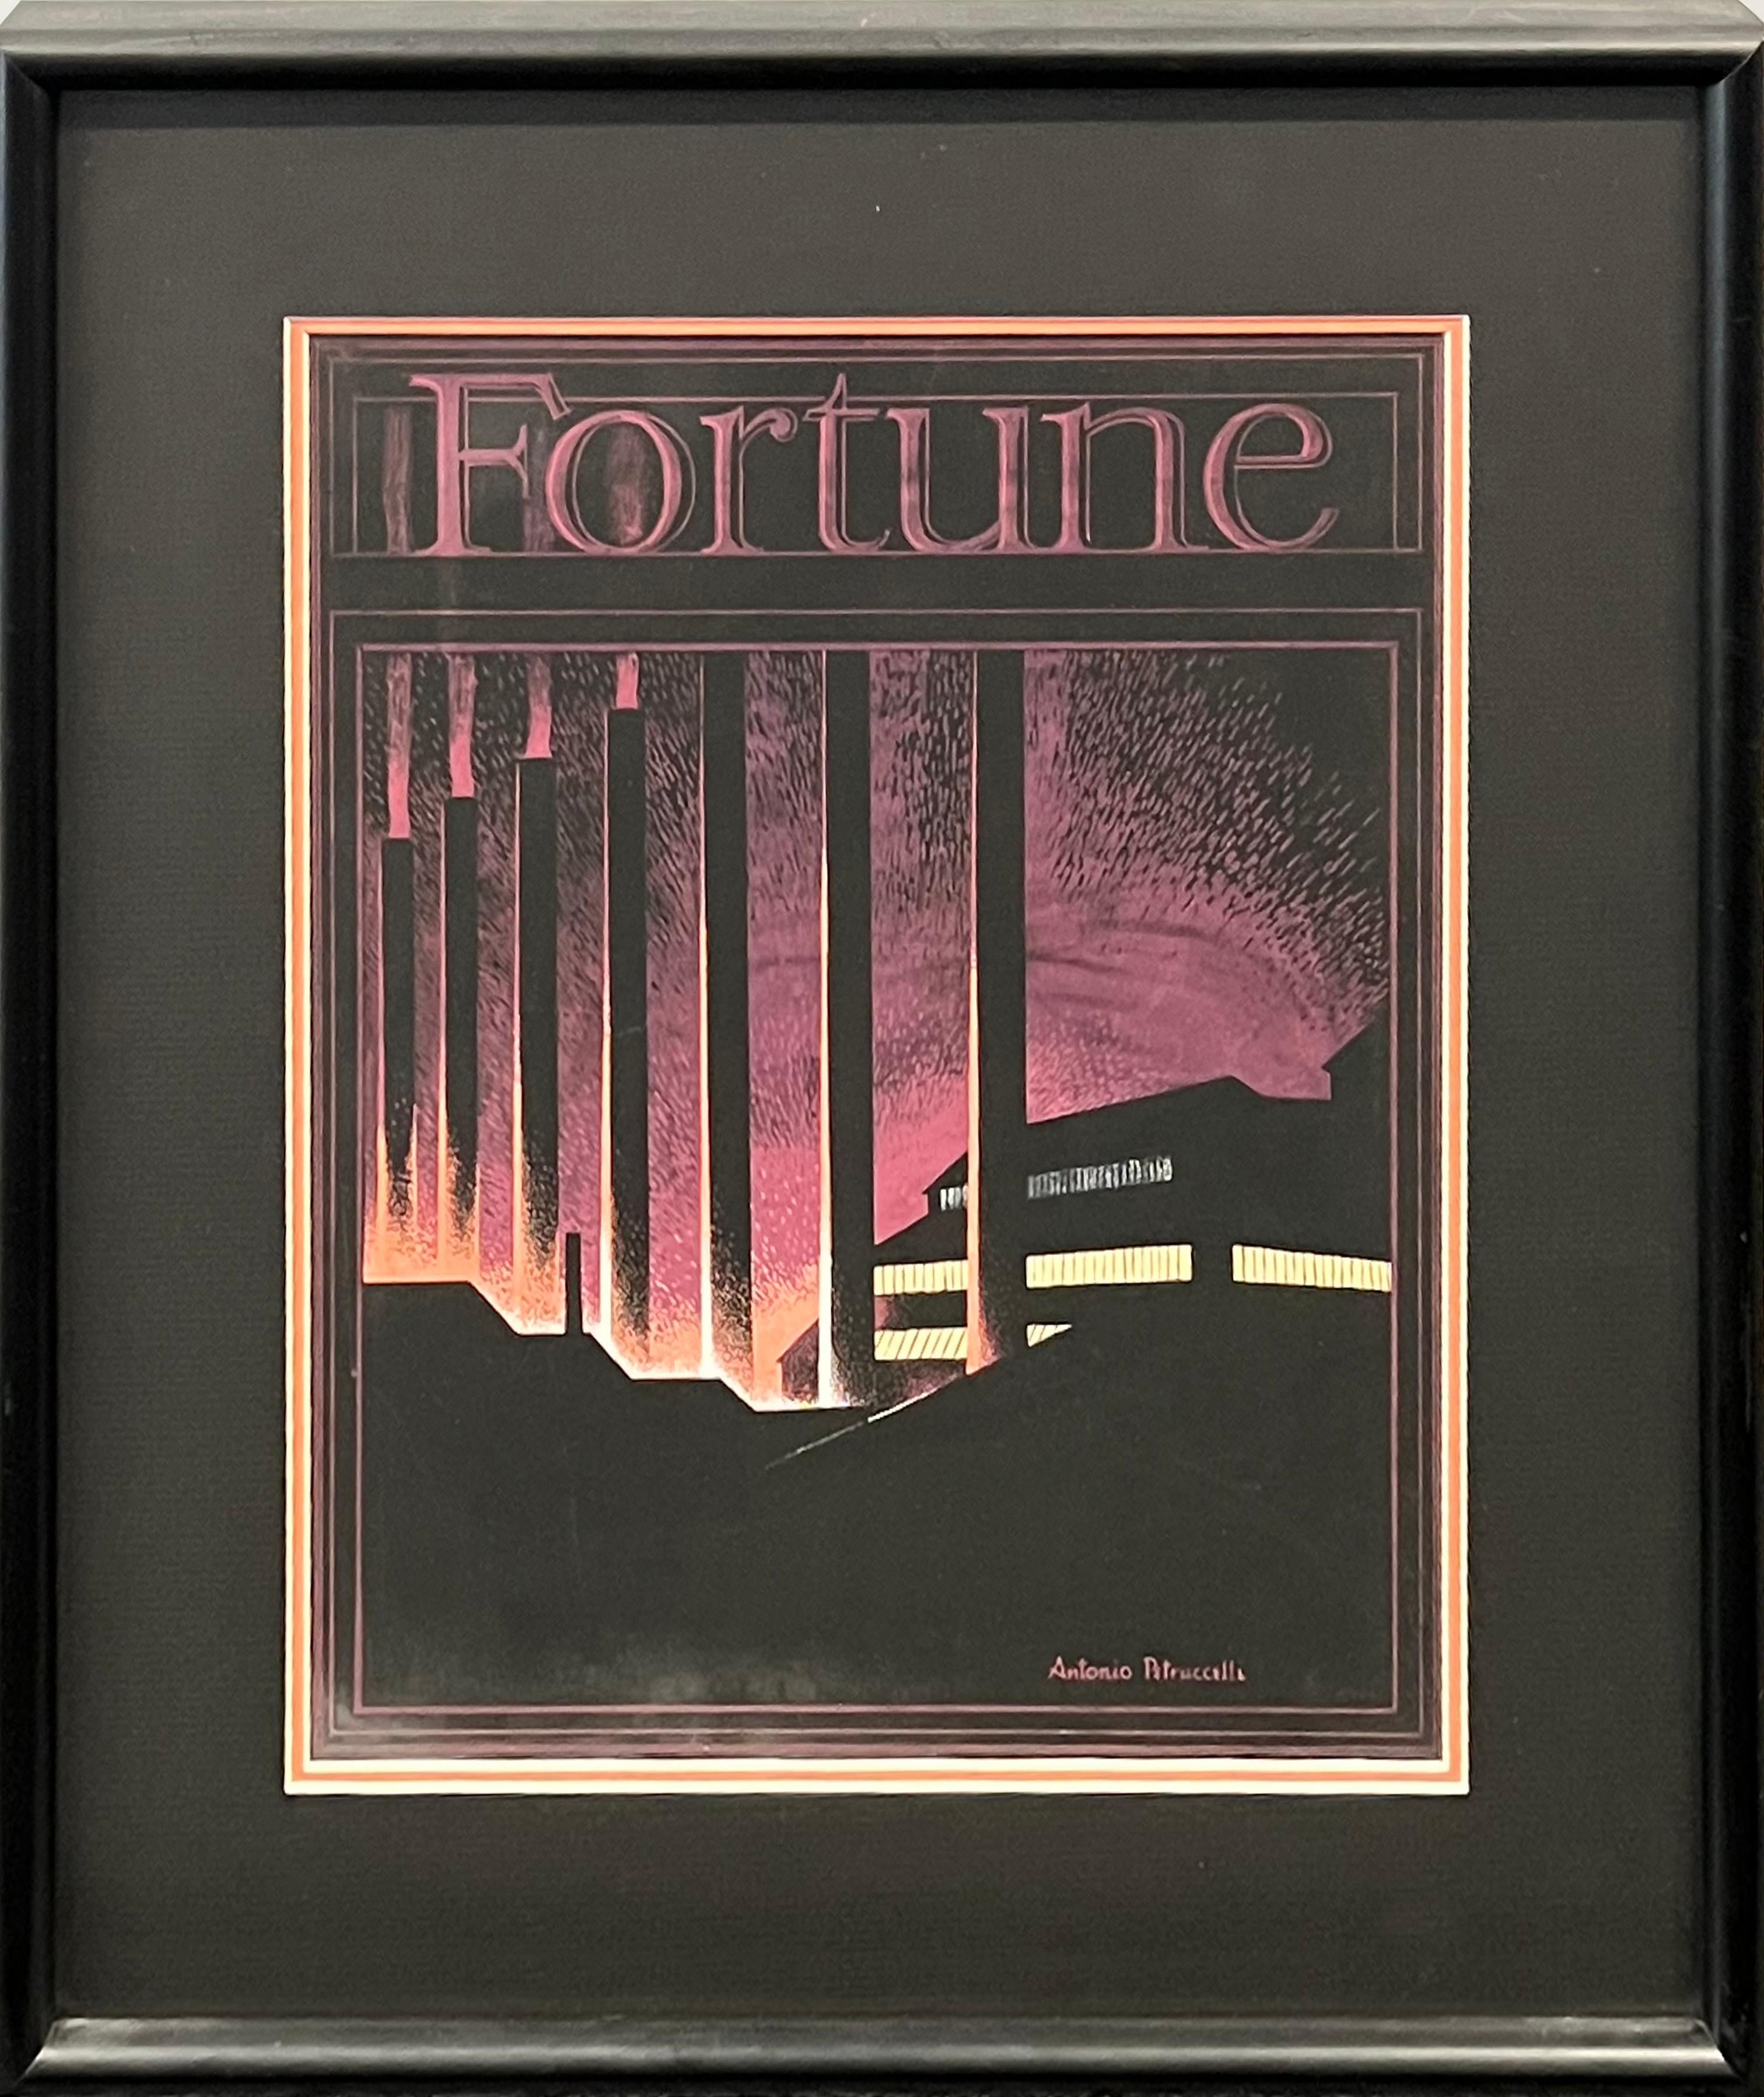 Peinture originale des années 1930, couverture de Fortune. Scène industrielle et moderne américaine - Painting de Antonio Petruccelli